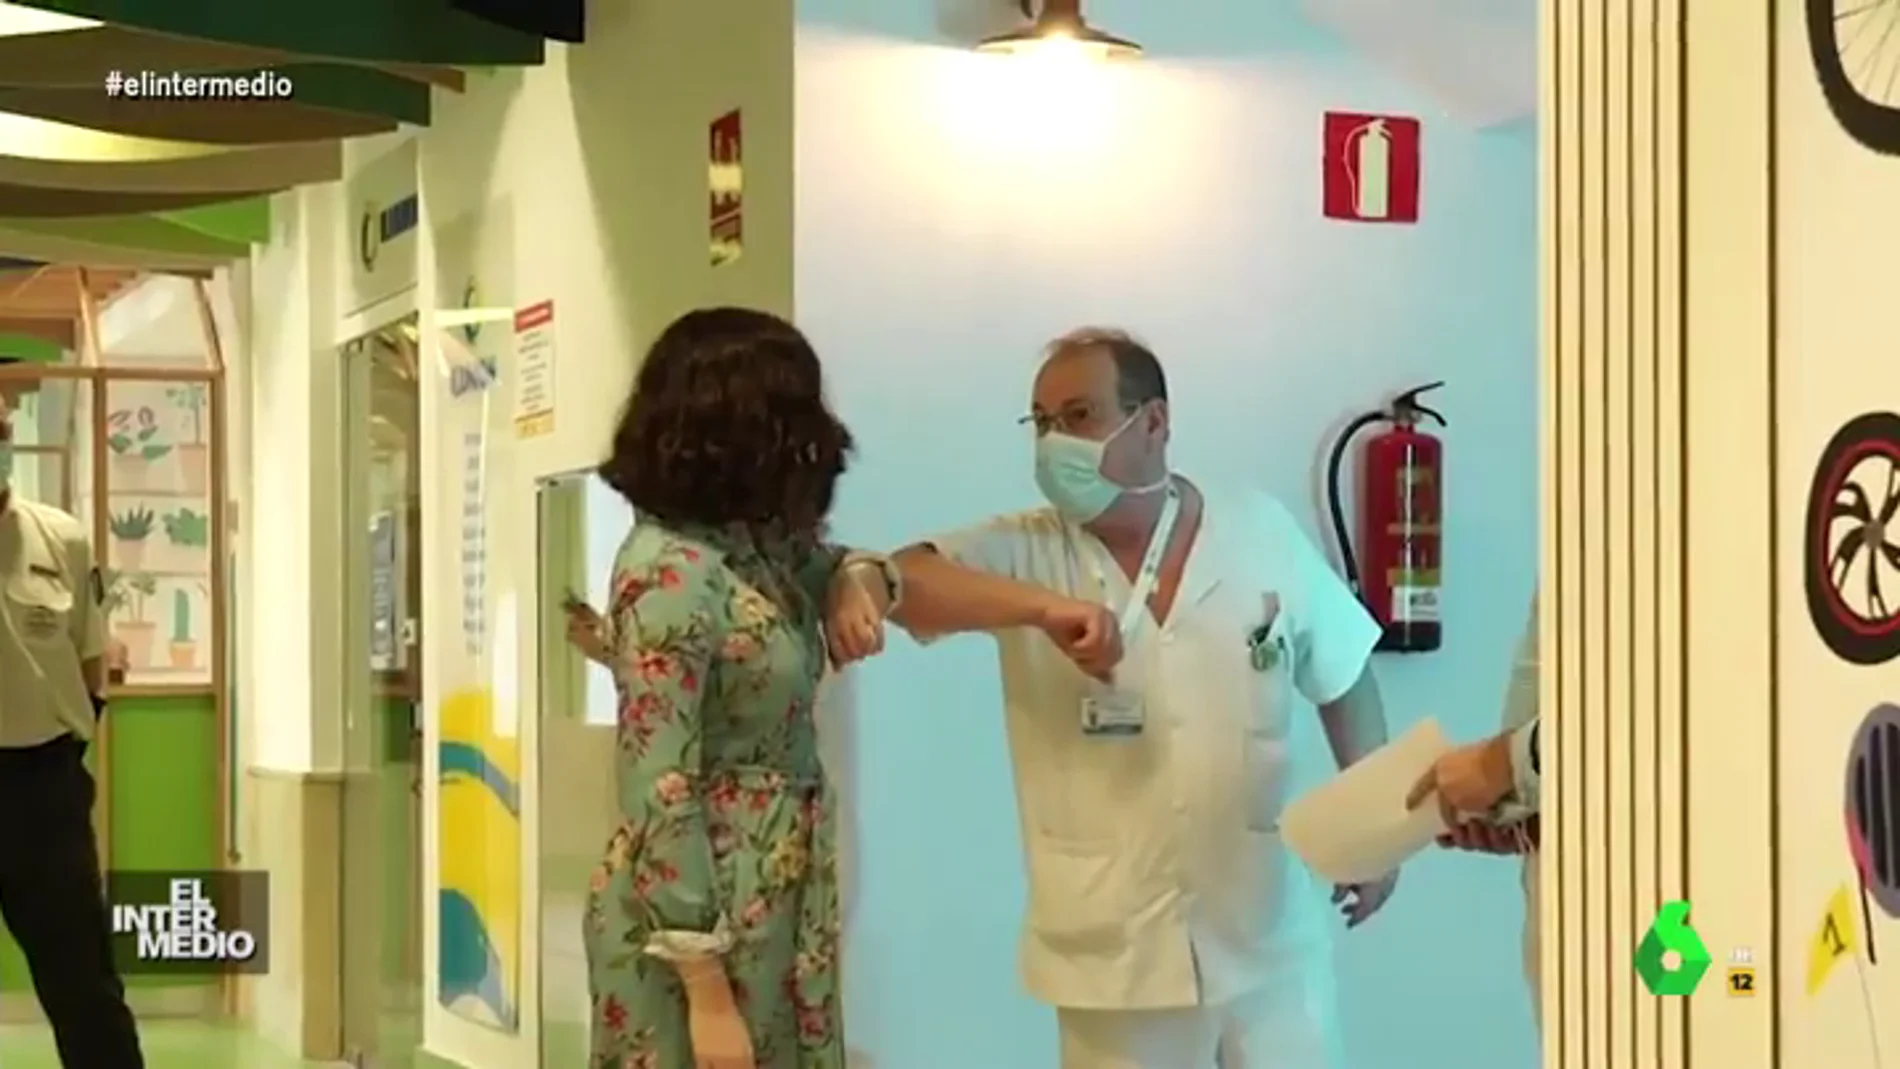 Vídeo manipulado - La pregunta infantil de Díaz Ayuso a un sanitario: "¿Se encuentra bien abuelito?"